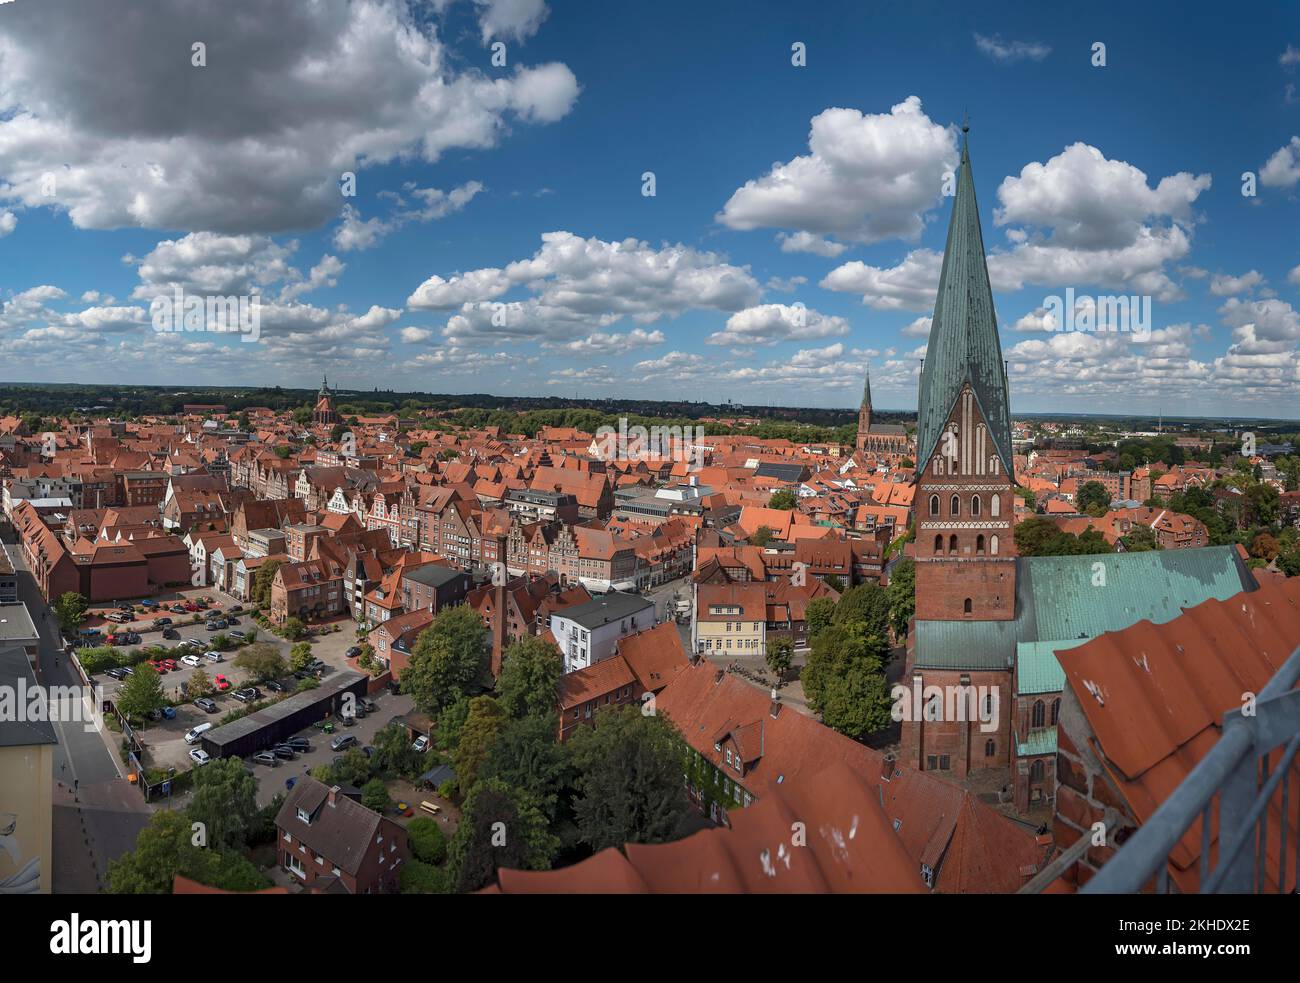 Vista panoramica dall'ex torre dell'acqua della città vecchia con le tre chiese, Lüneburg, bassa Sassonia, Germania, Europa Foto Stock